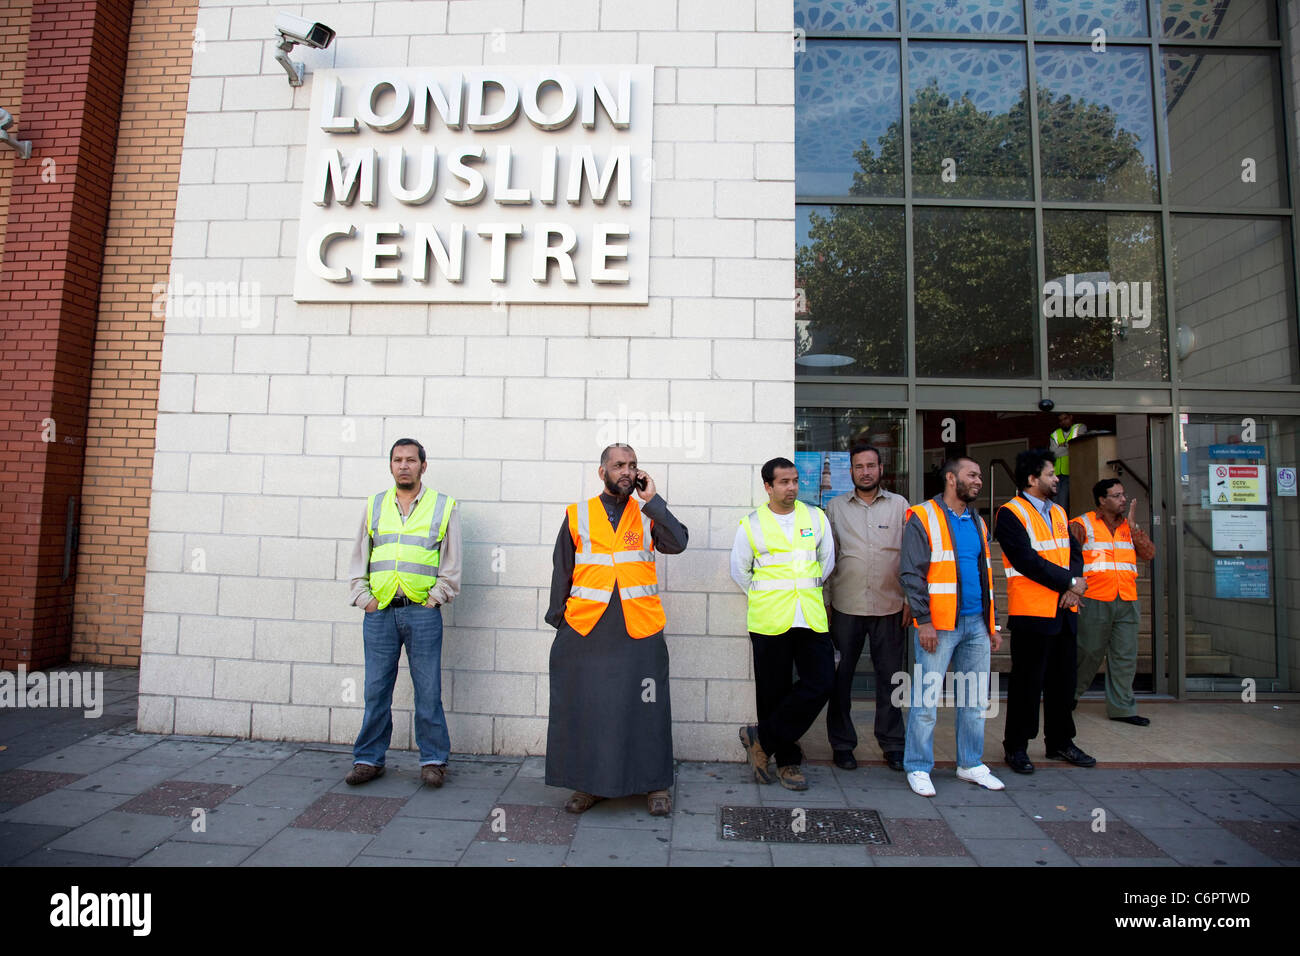 Contra el Fascismo rally en Whitechapel, East London. Tower Hamlets Unite. Proteger el Centro Musulmán de Londres. Foto de stock